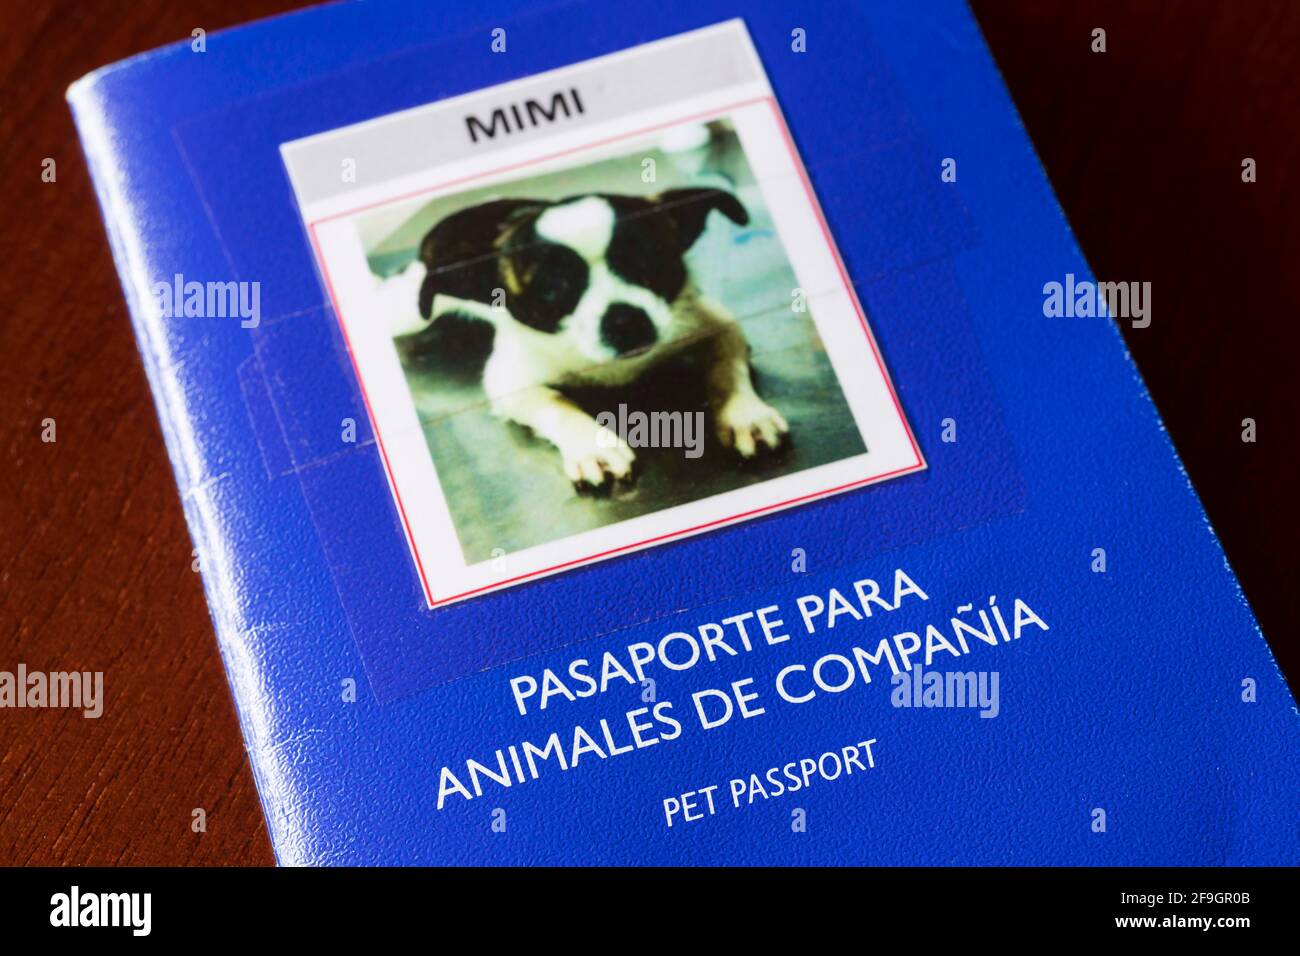 Spanish pet passport for small dog, passport Stock Photo